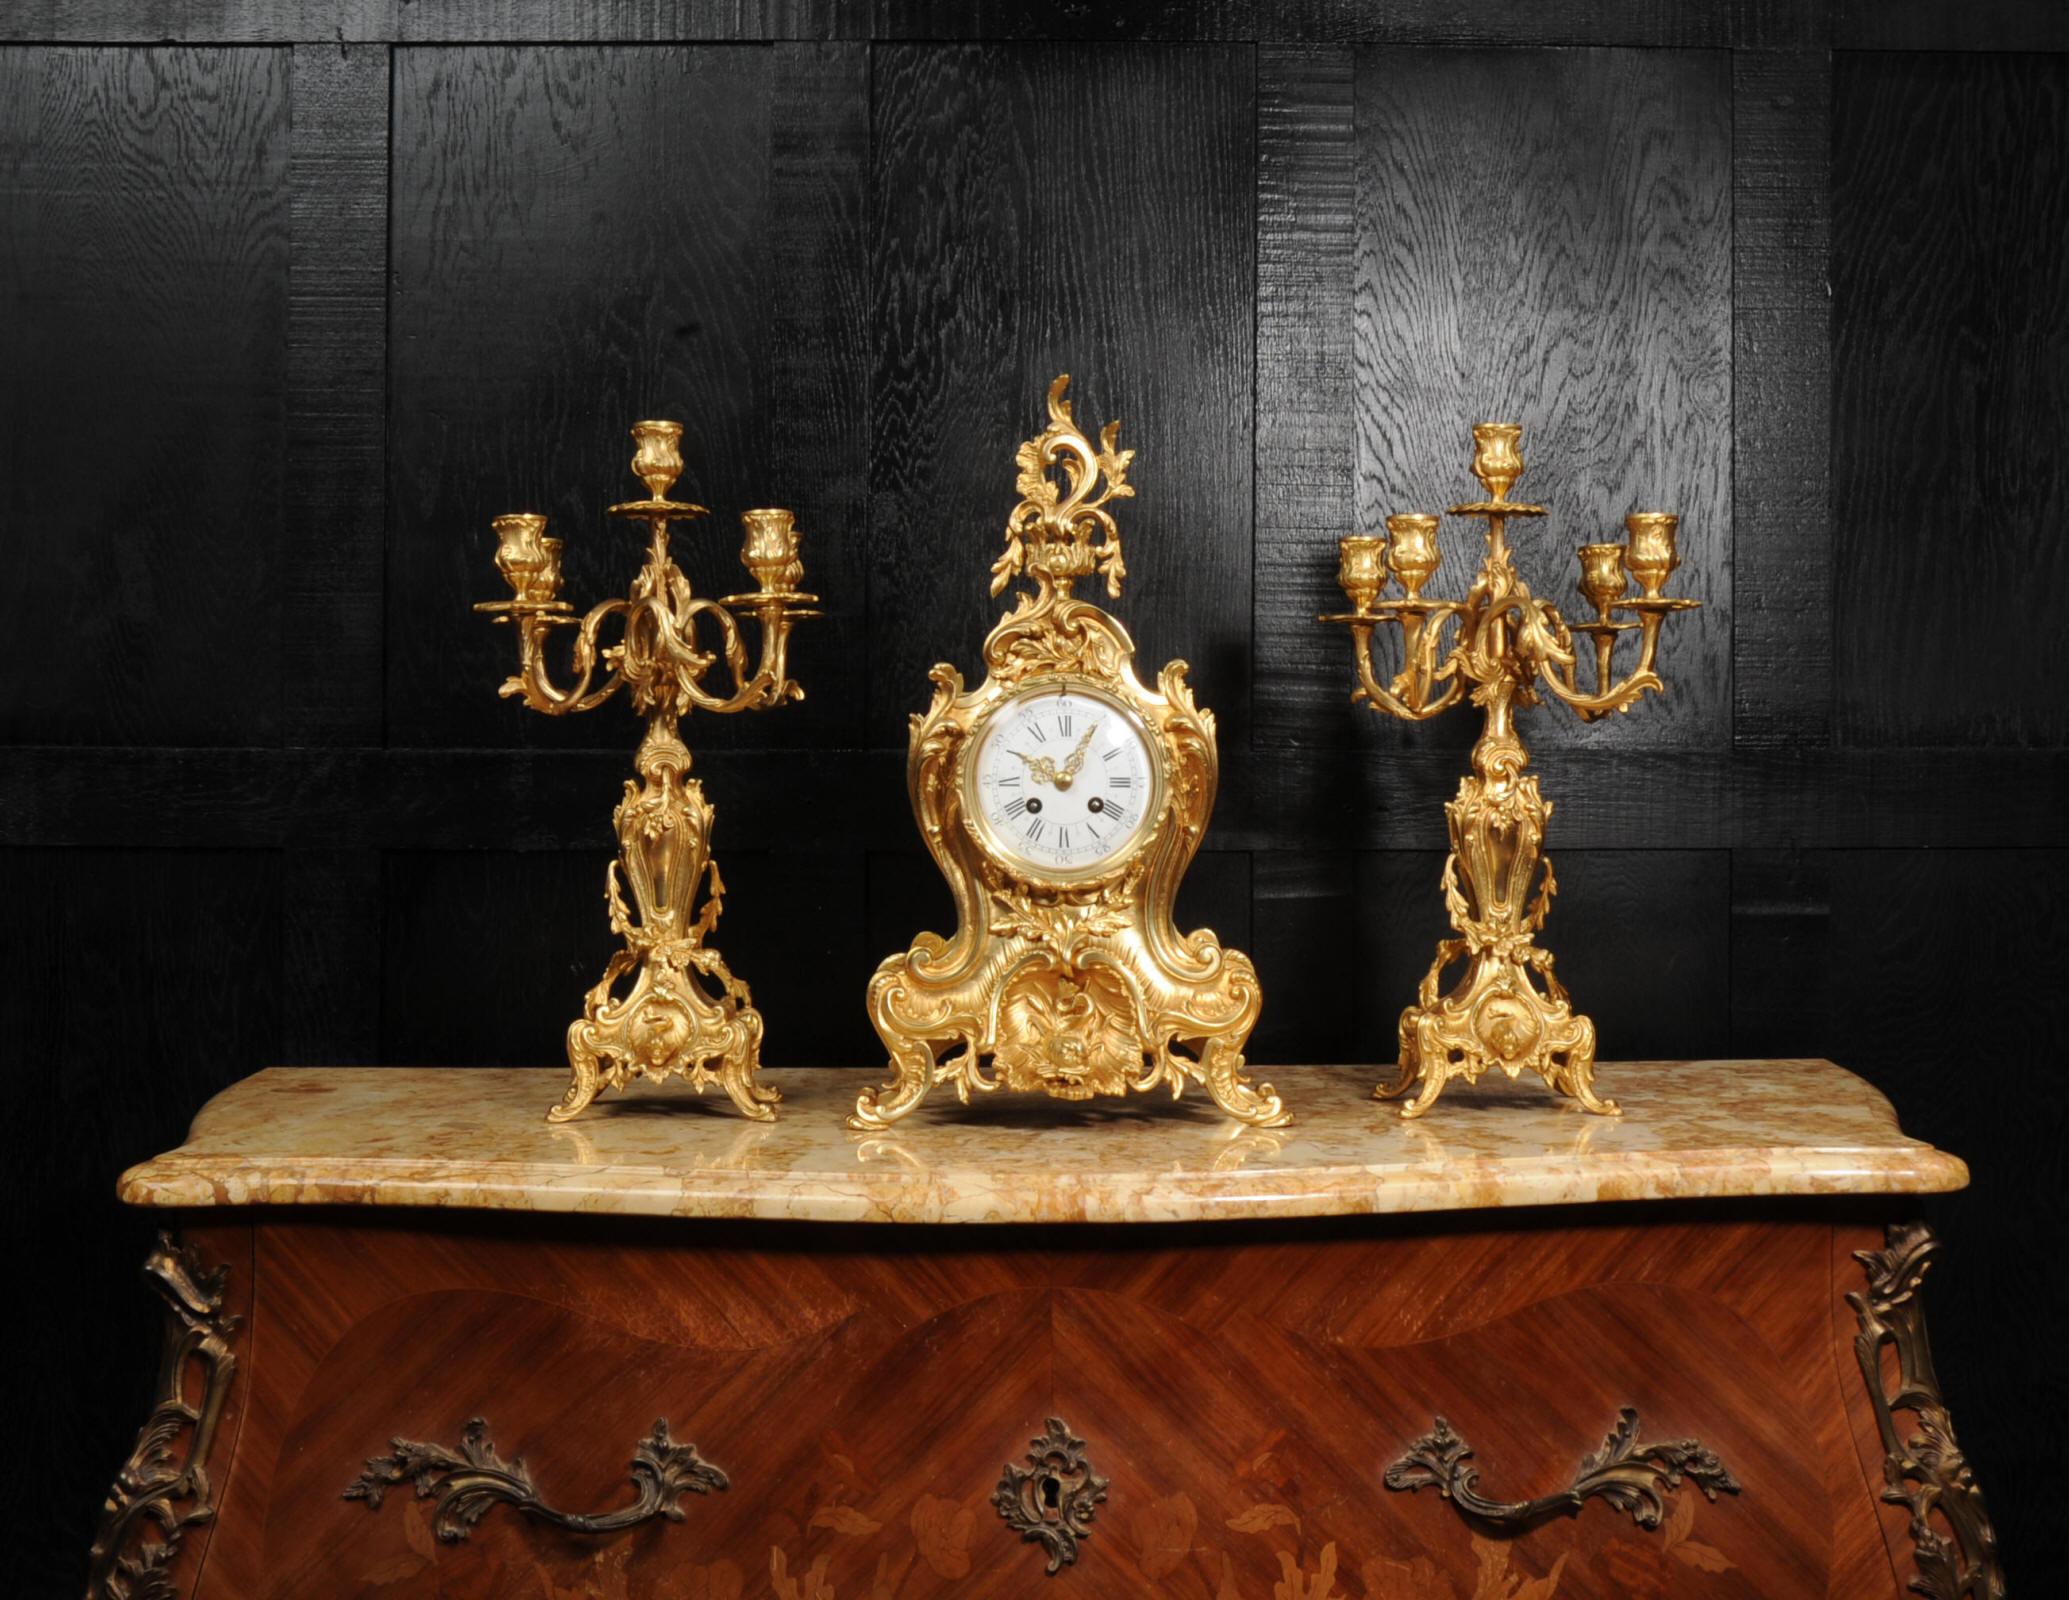 Une étonnante et grande horloge française originale en bronze doré par A. D. Mougin. De très beau style rococo, elle présente un dauphin dans une niche et est décorée de rinceaux en 